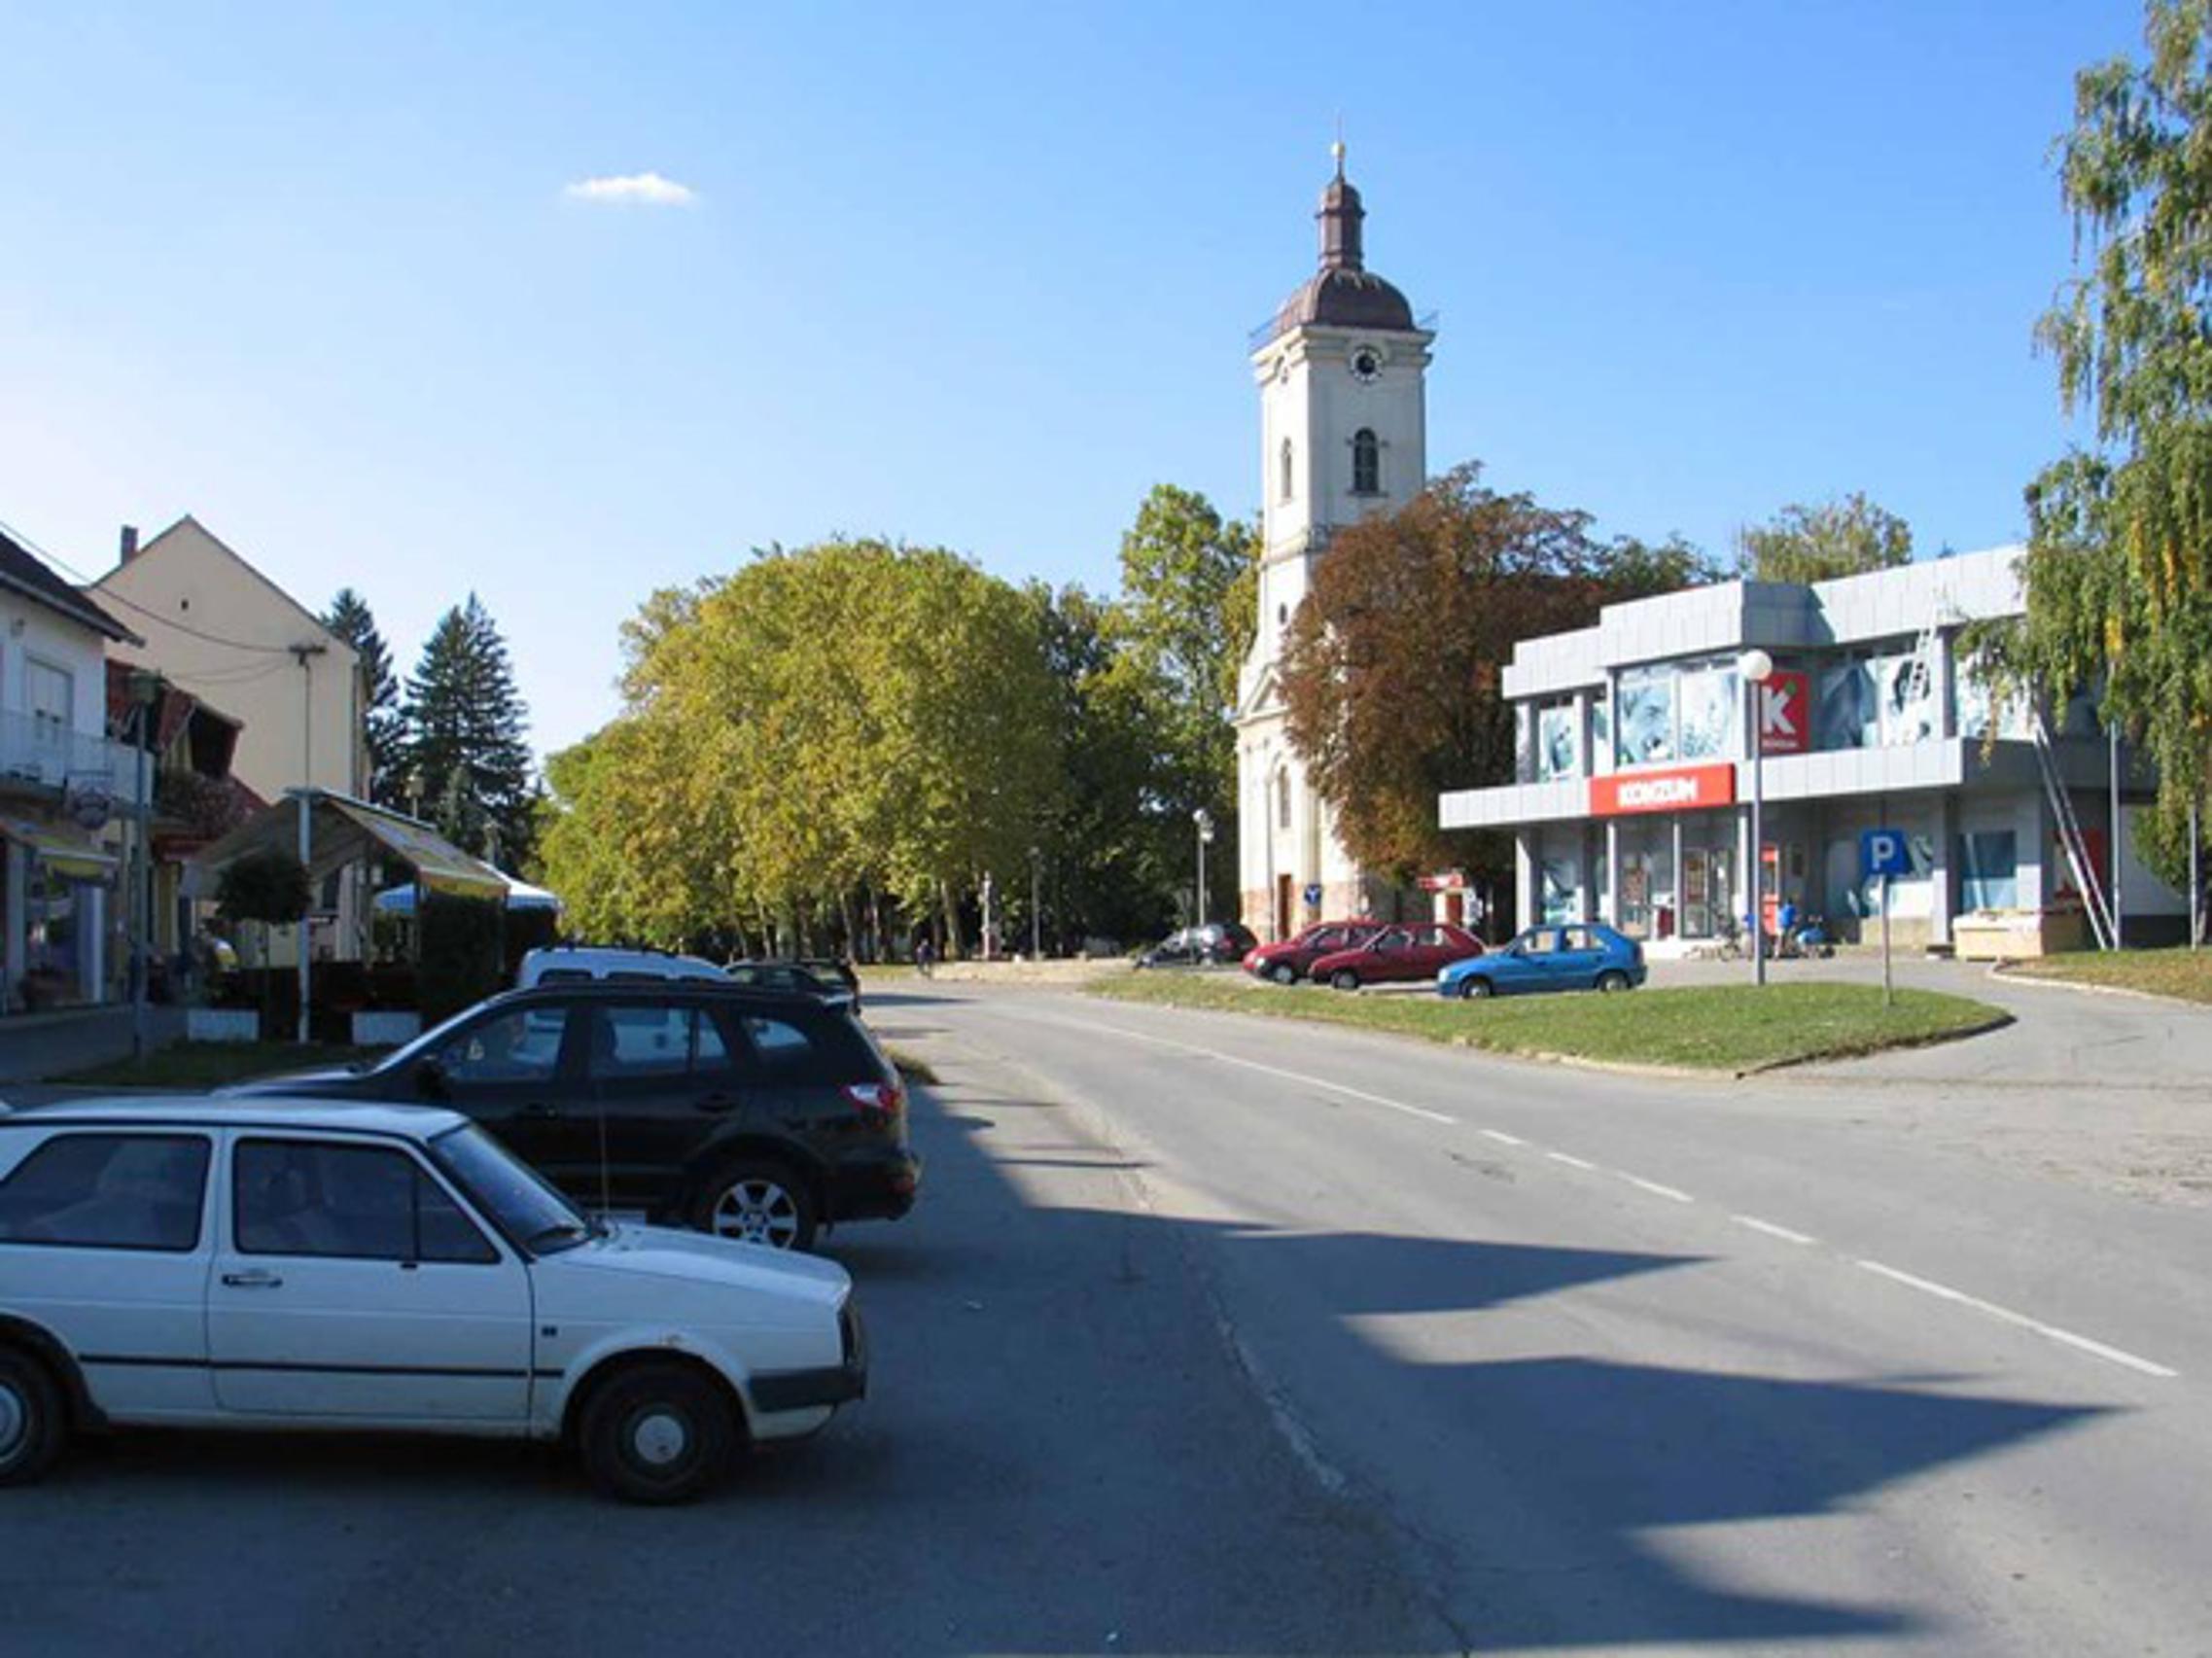 Oriovac je dio prve prve skupine od pet općina koje rade lokalnu strategiju